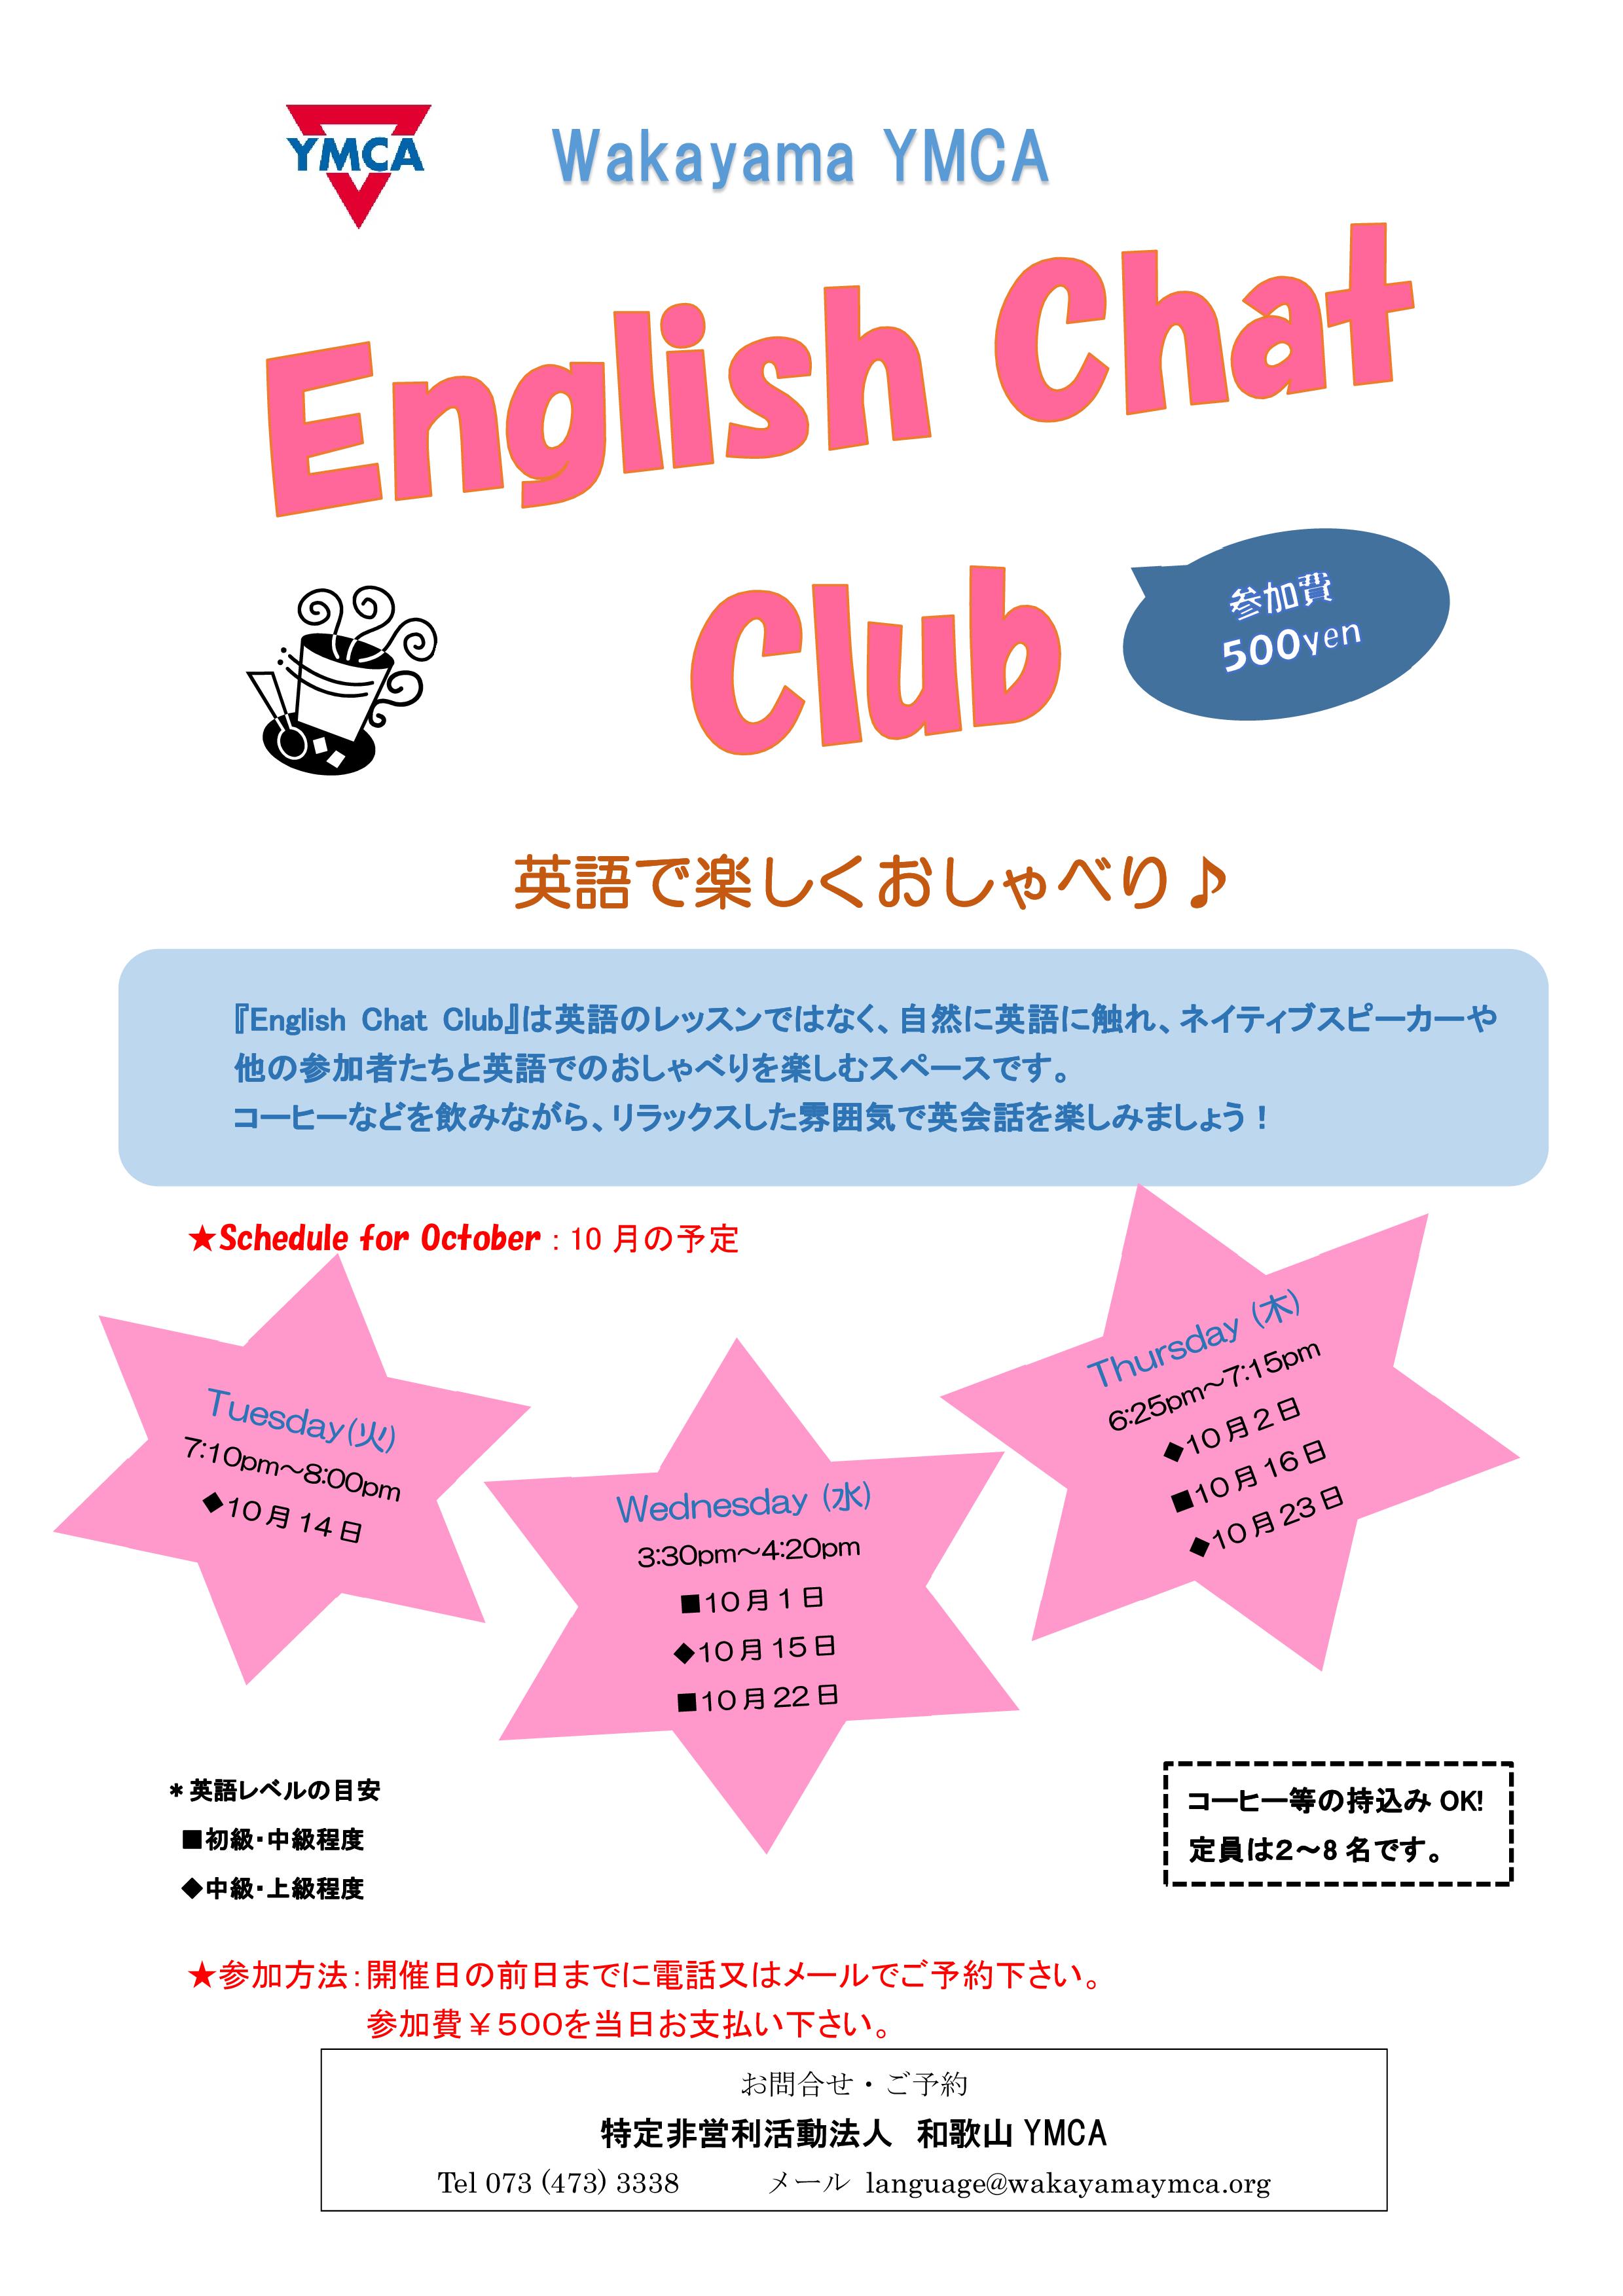 English Chat Club 英語で楽しくおしゃべり 和歌山ymca Blog